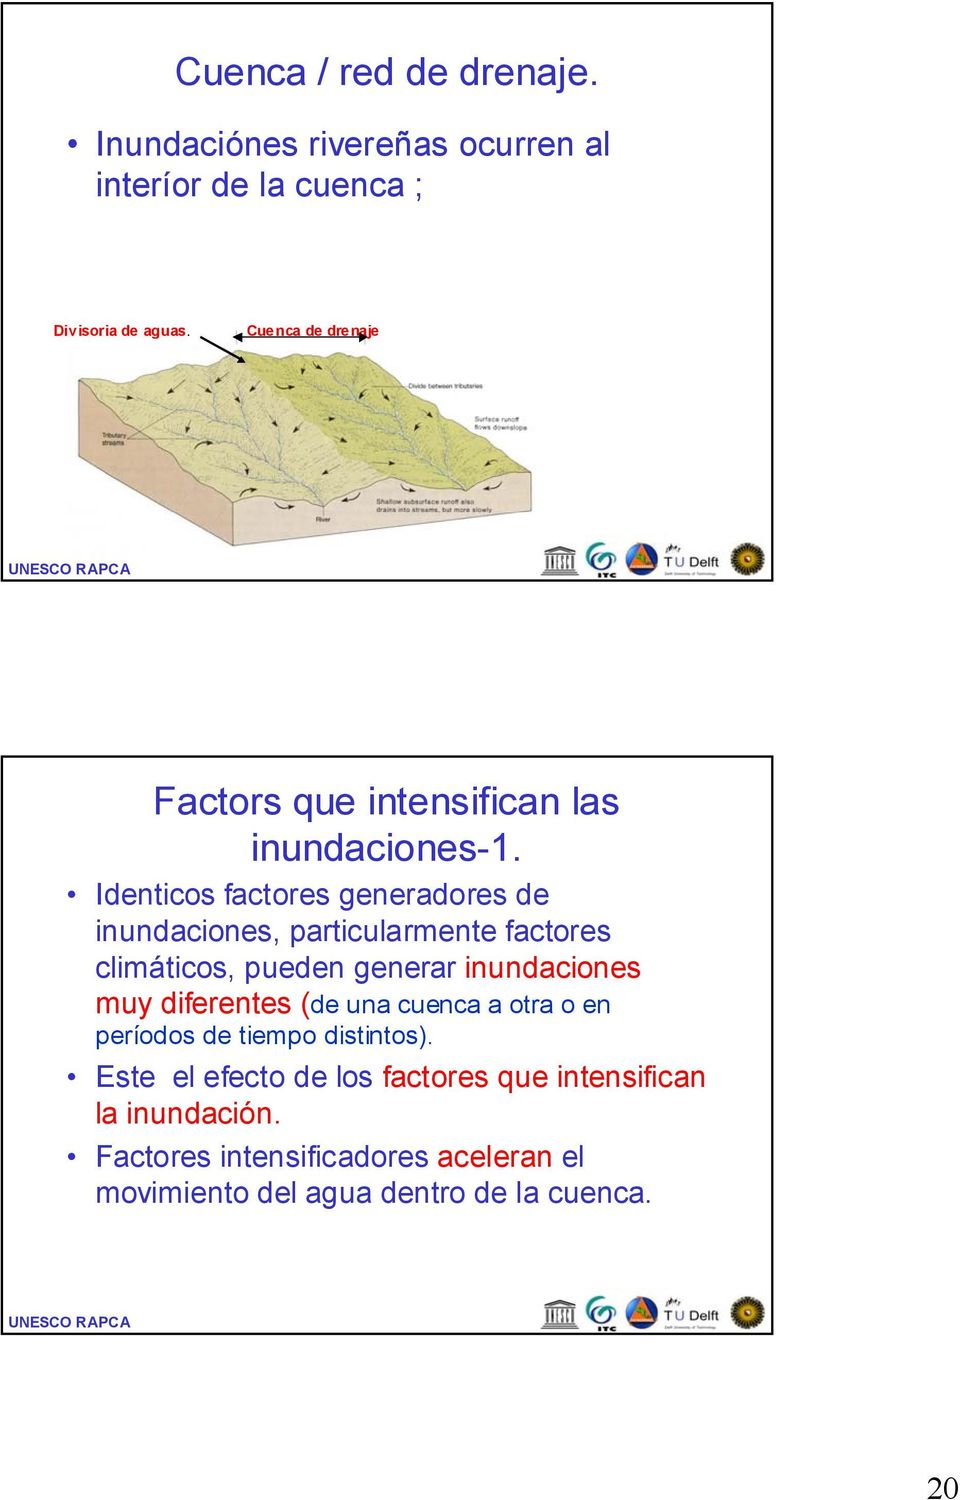 Identicos factores generadores de inundaciones, particularmente factores climáticos, pueden generar inundaciones muy